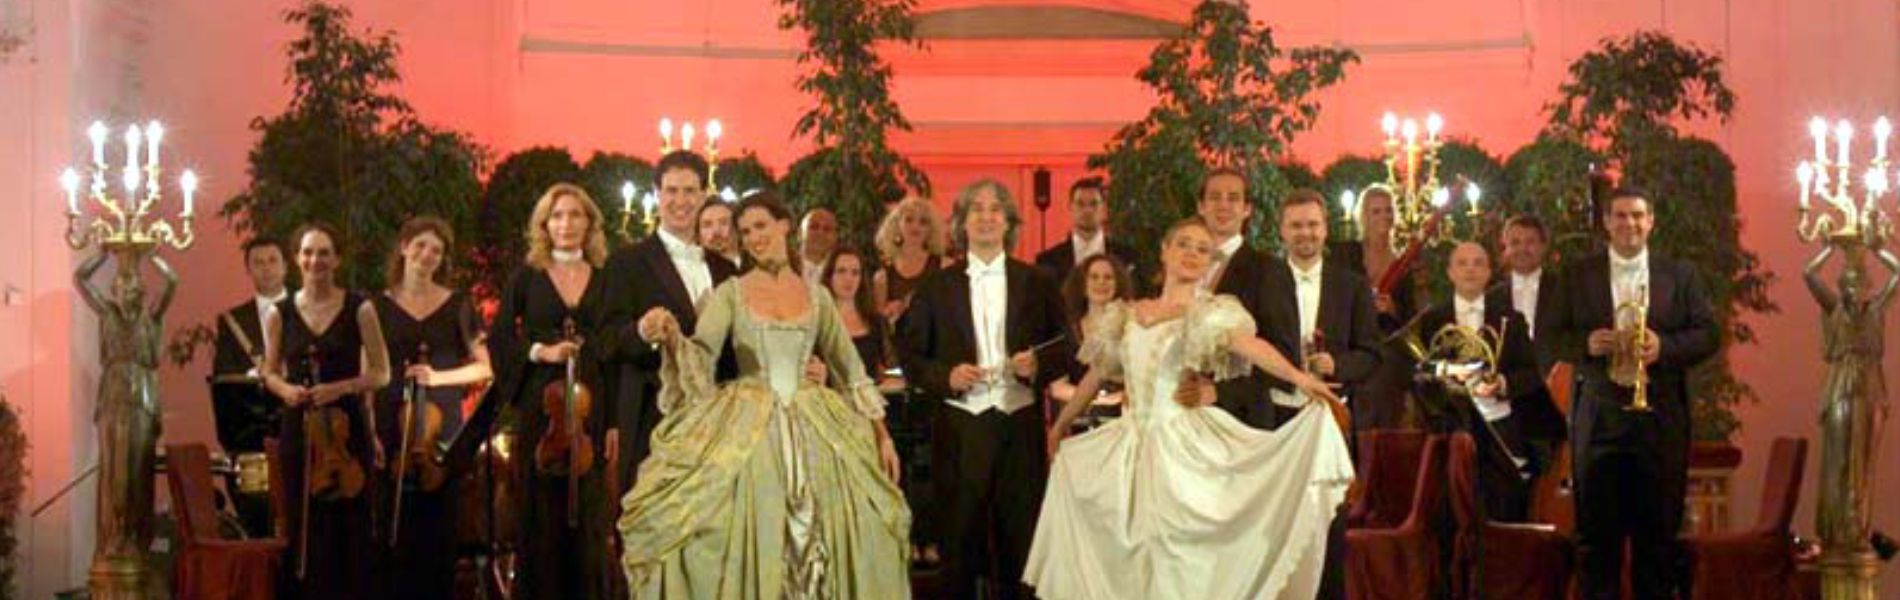 Dinner and Concert at Schoenbrunn Palace - Vienna, Austria